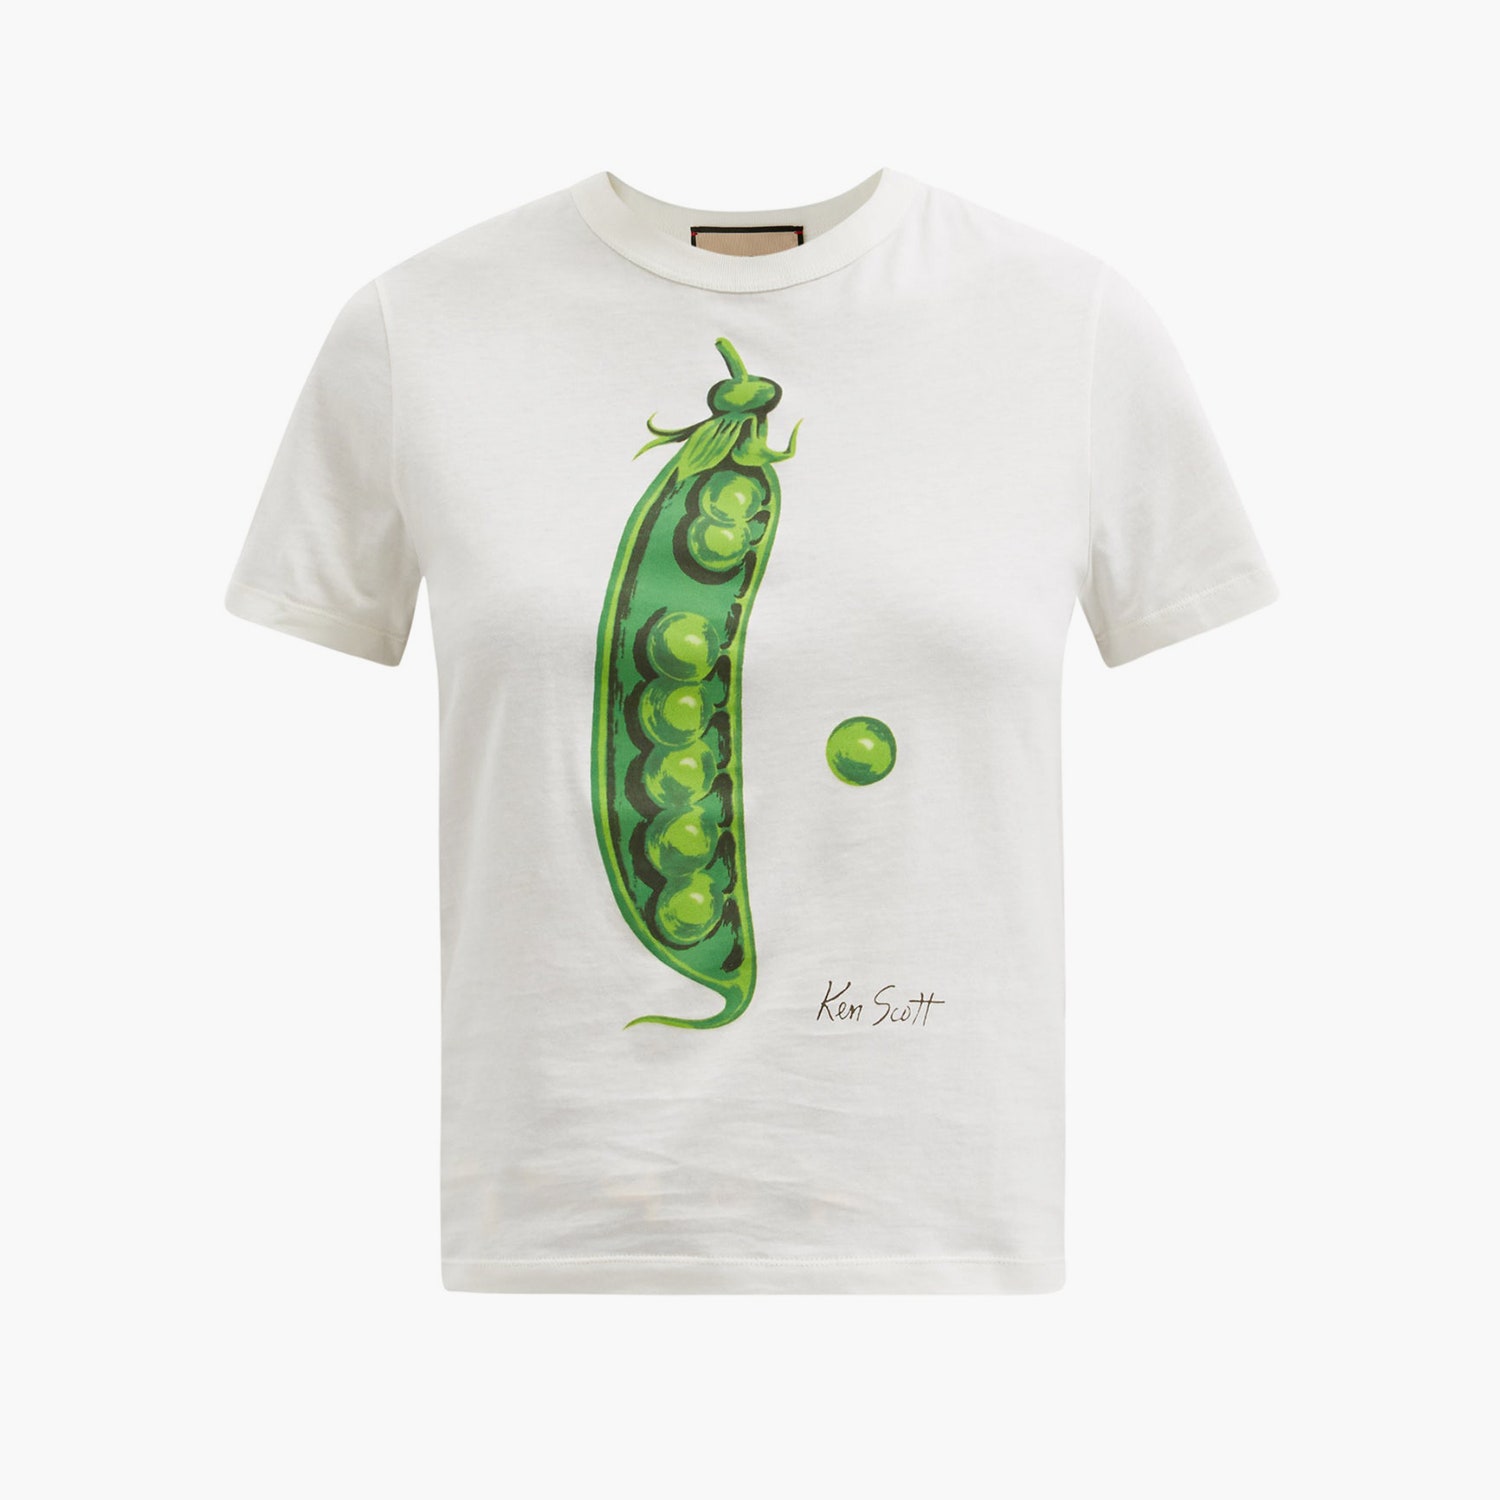 Хлопковая футболка Gucci x Ken Skott 25925 рублей matchesfashion.com